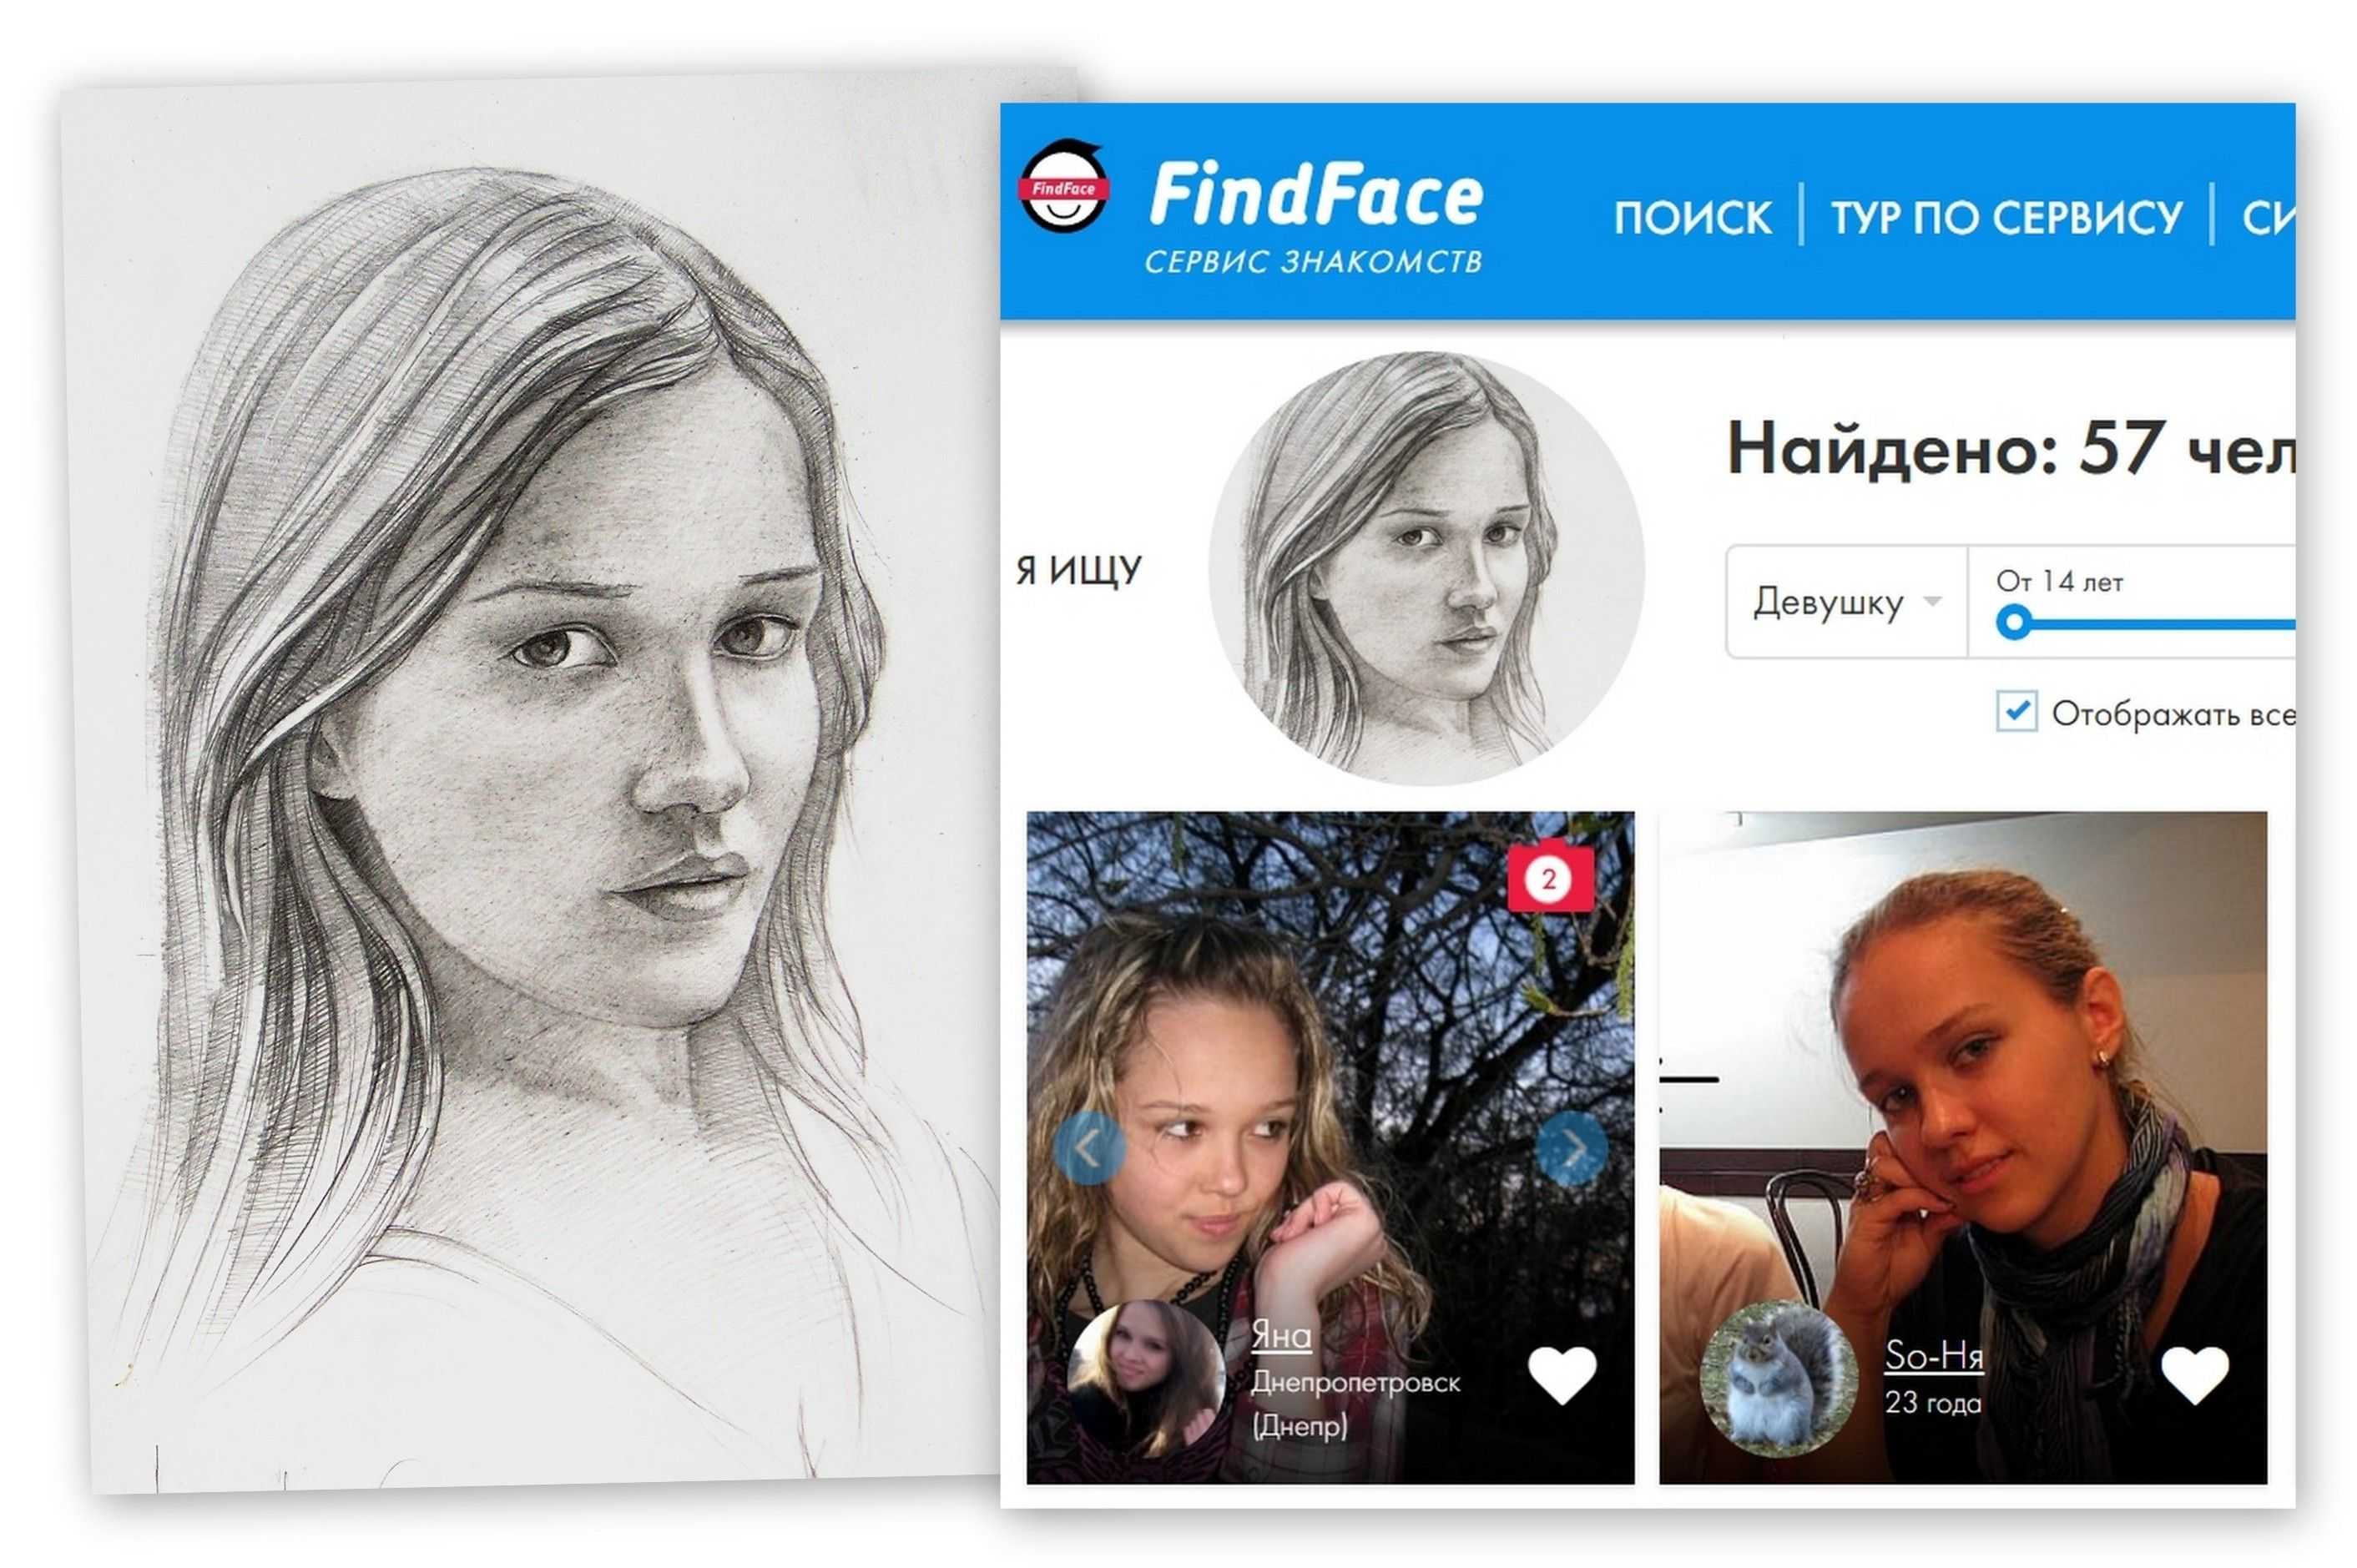 Find face - cкачать find face бесплатно на русском